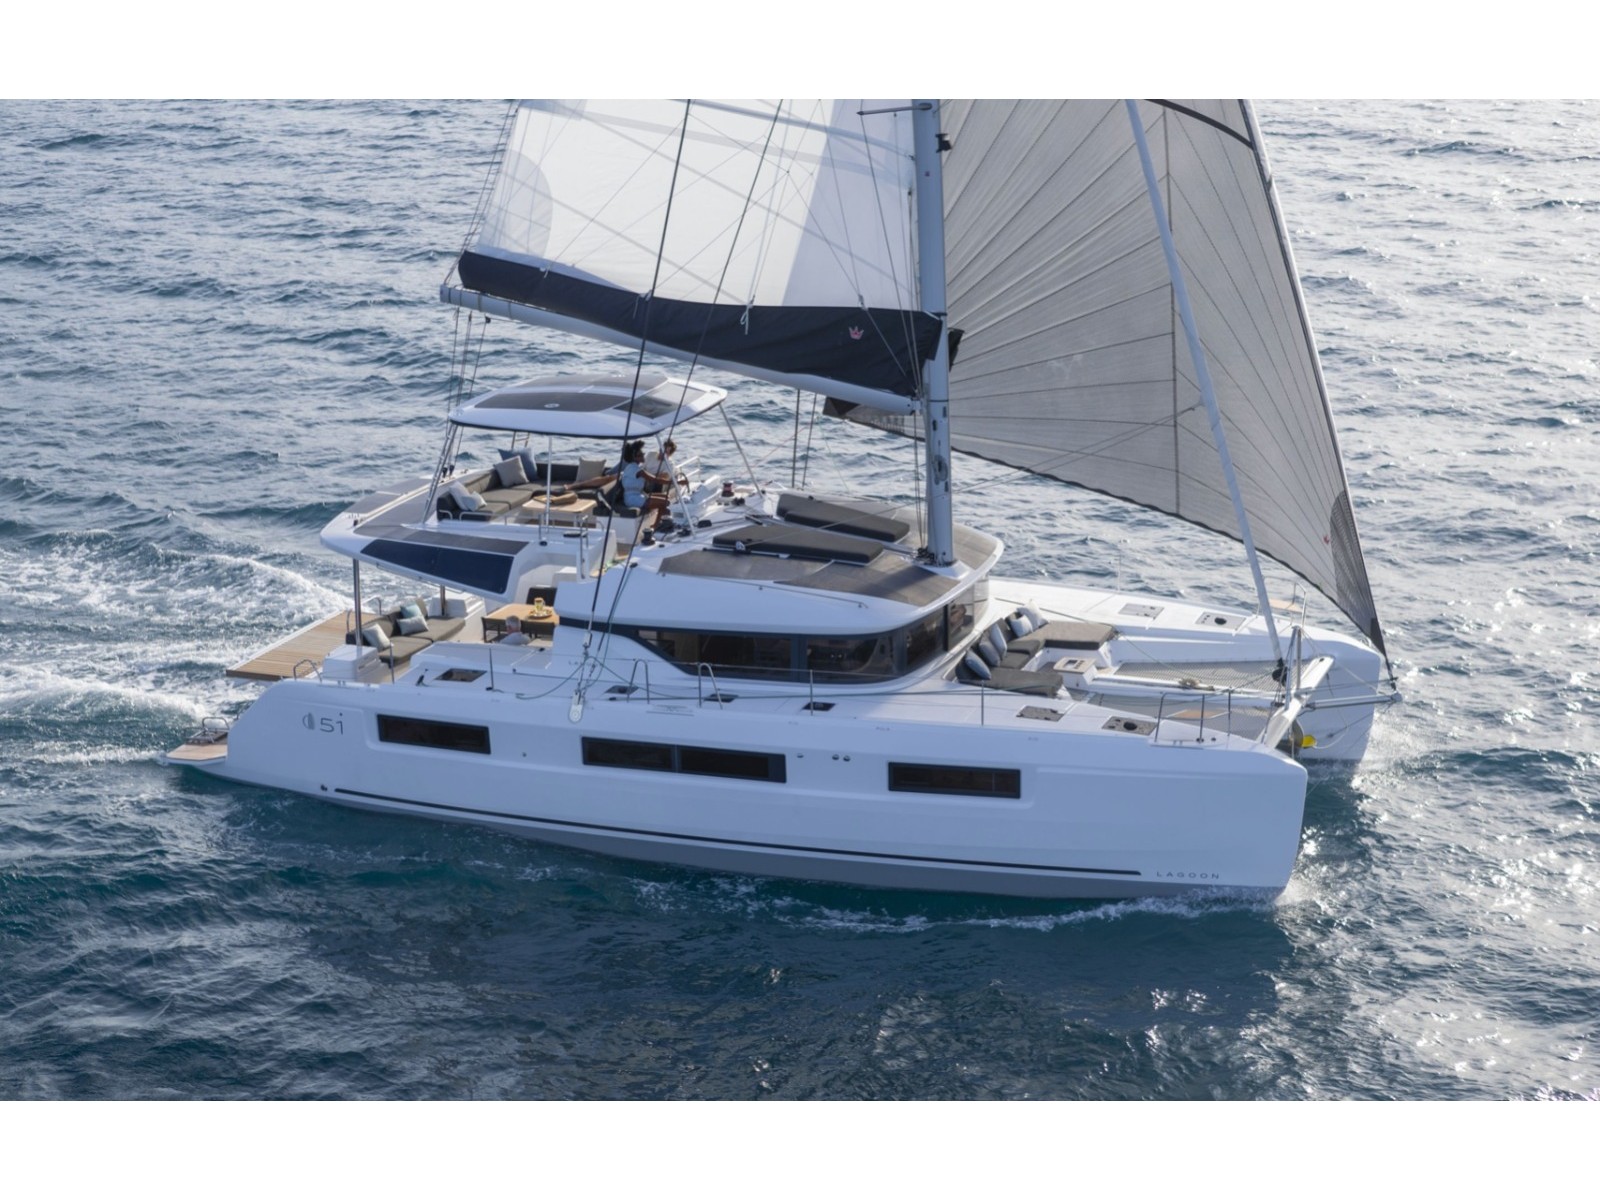 Lagoon 51 - Luxury yacht charter Italy & Boat hire in Italy Sicily Aeolian Islands Capo d'Orlando Capo d'Orlando Marina 1